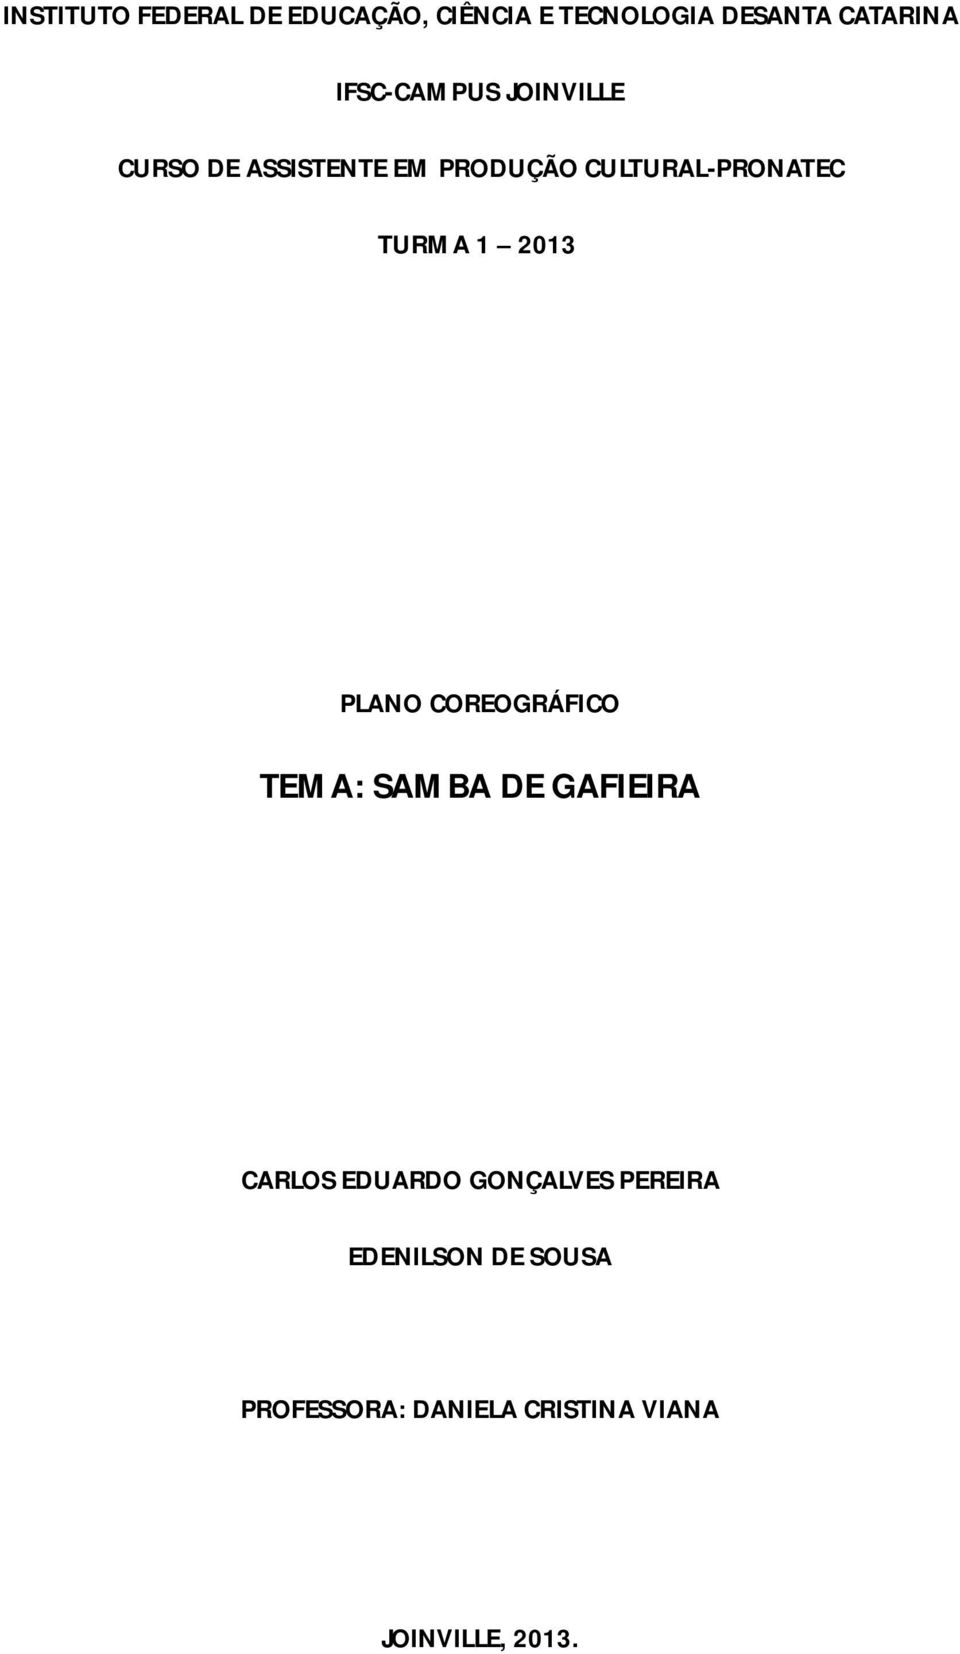 TURMA 1 2013 PLANO COREOGRÁFICO TEMA: SAMBA DE GAFIEIRA CARLOS EDUARDO